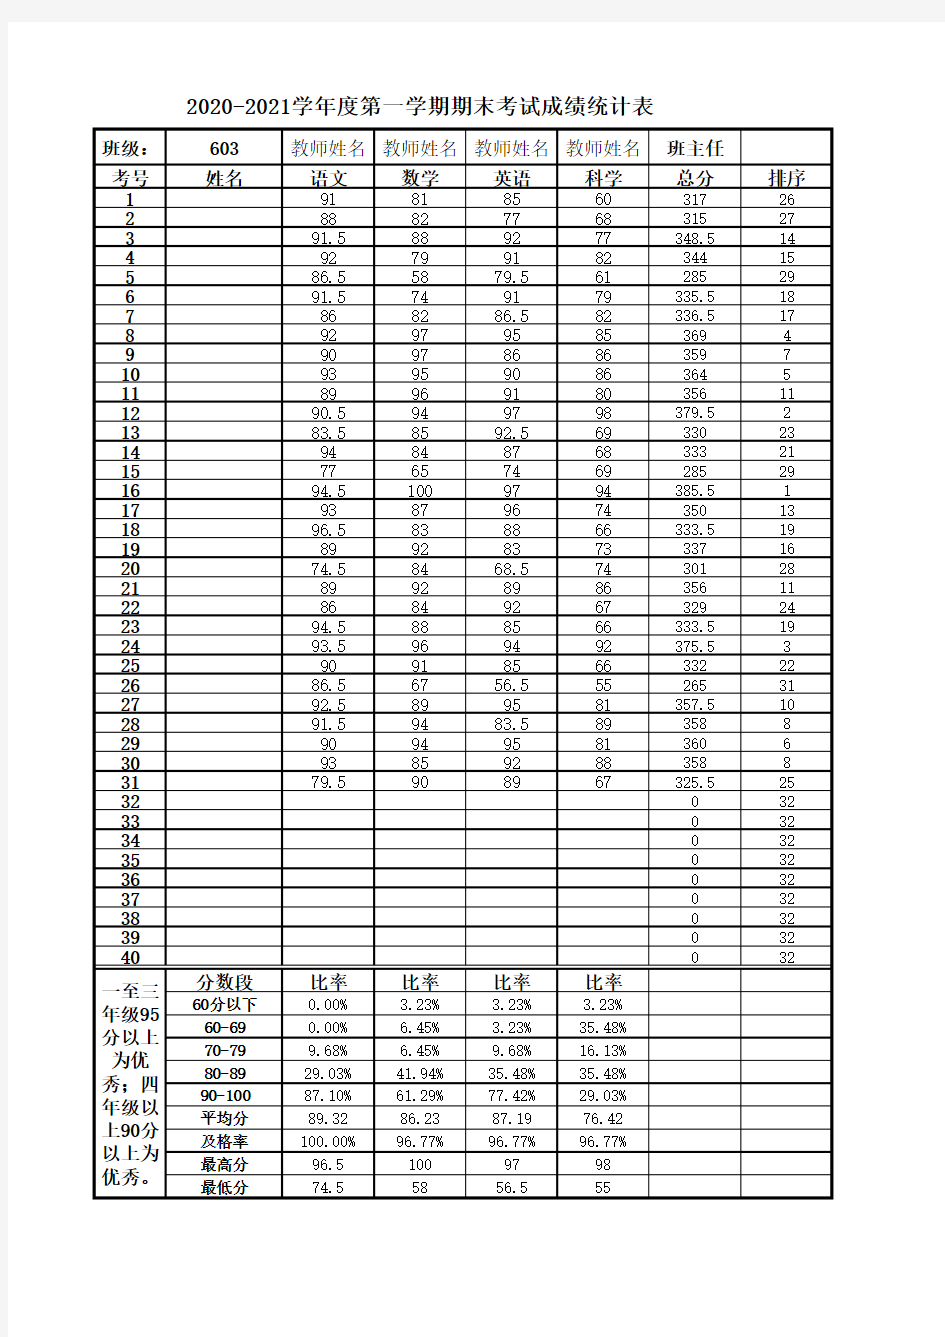 学校成绩统计汇总与质量分析表